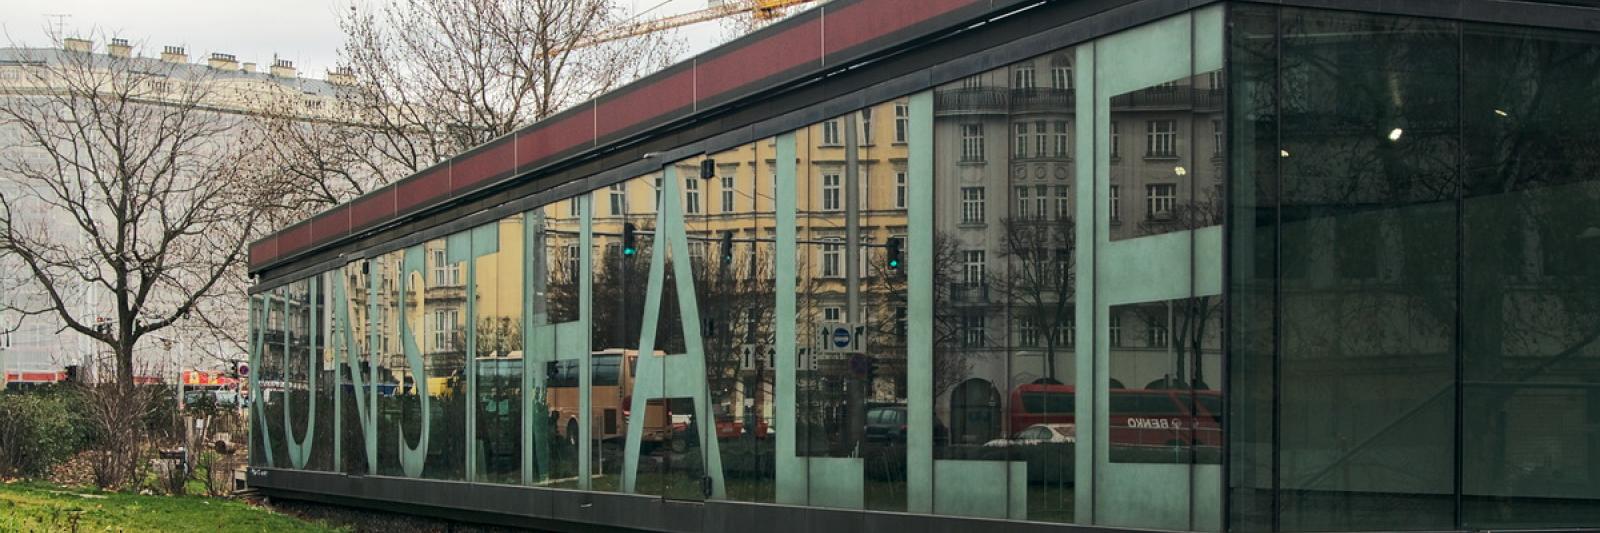 Rudolf Rengshausen: Sandstrahlen der Schriftzüge für die Kunsthalle Wien am Karlsplatz